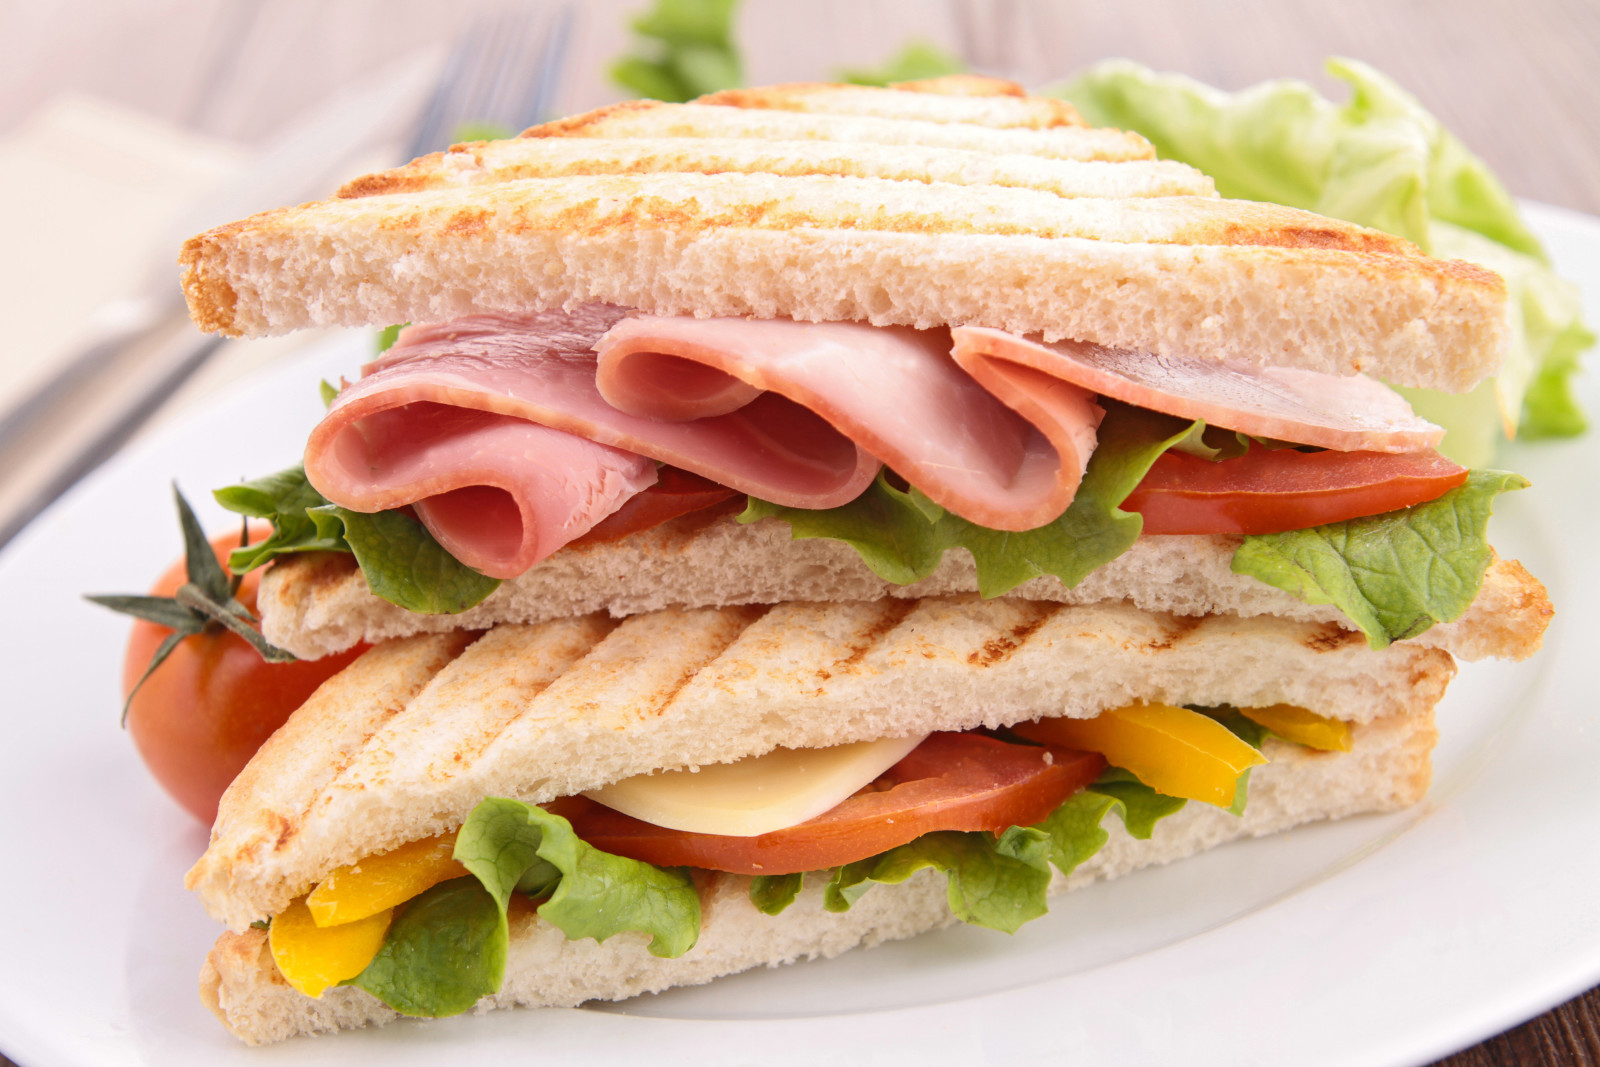 Lạp xưởng, món ăn, bánh mì sandwich, hình chụp, bánh mỳ, thức ăn nhanh